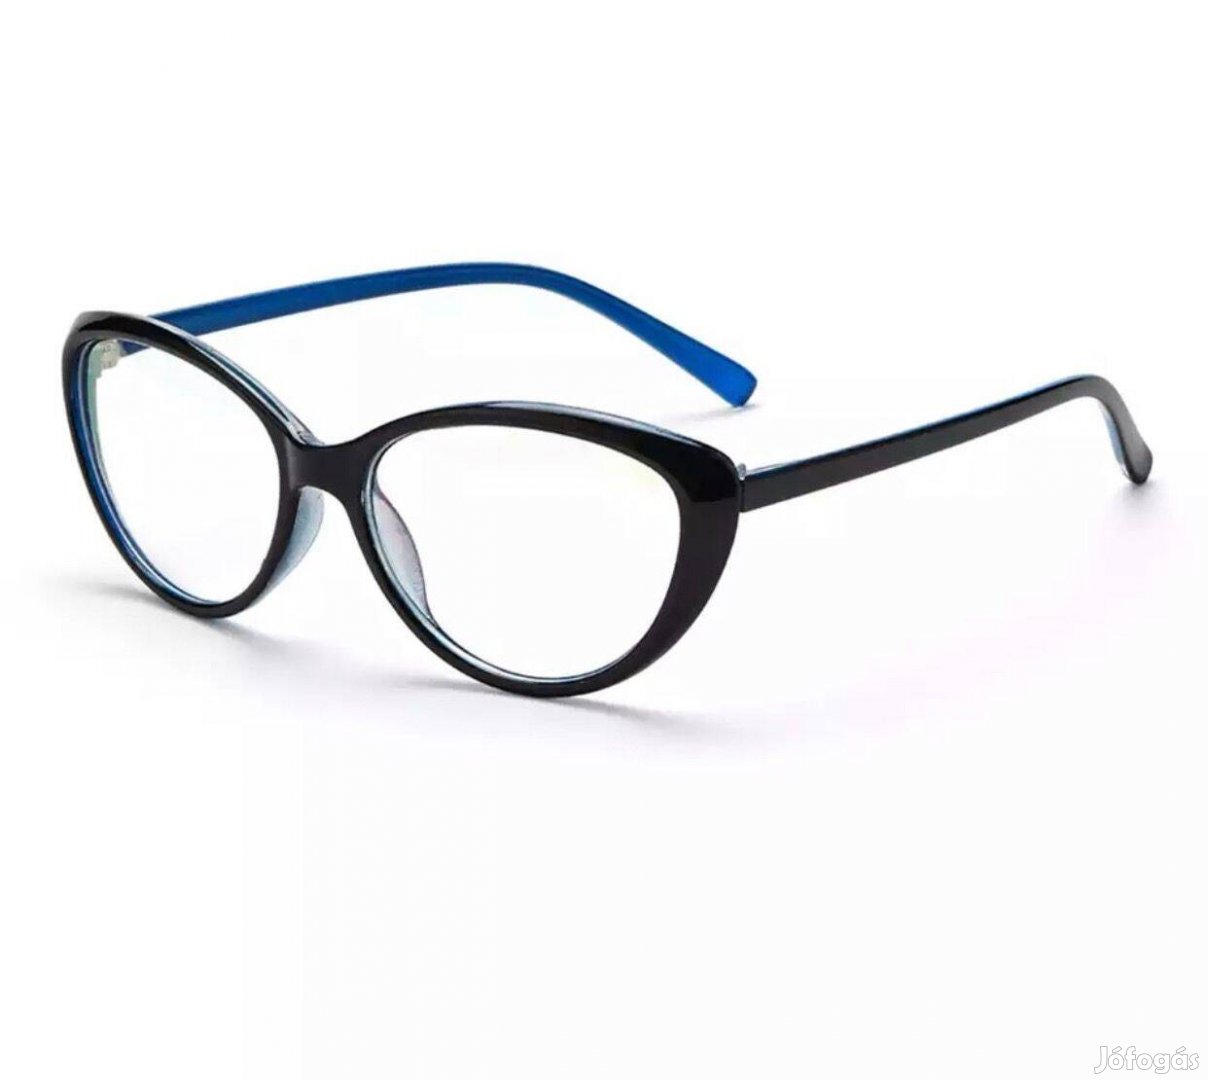 Bella divatszemüveg, szemüvegkeret készleten új számlával postázom is